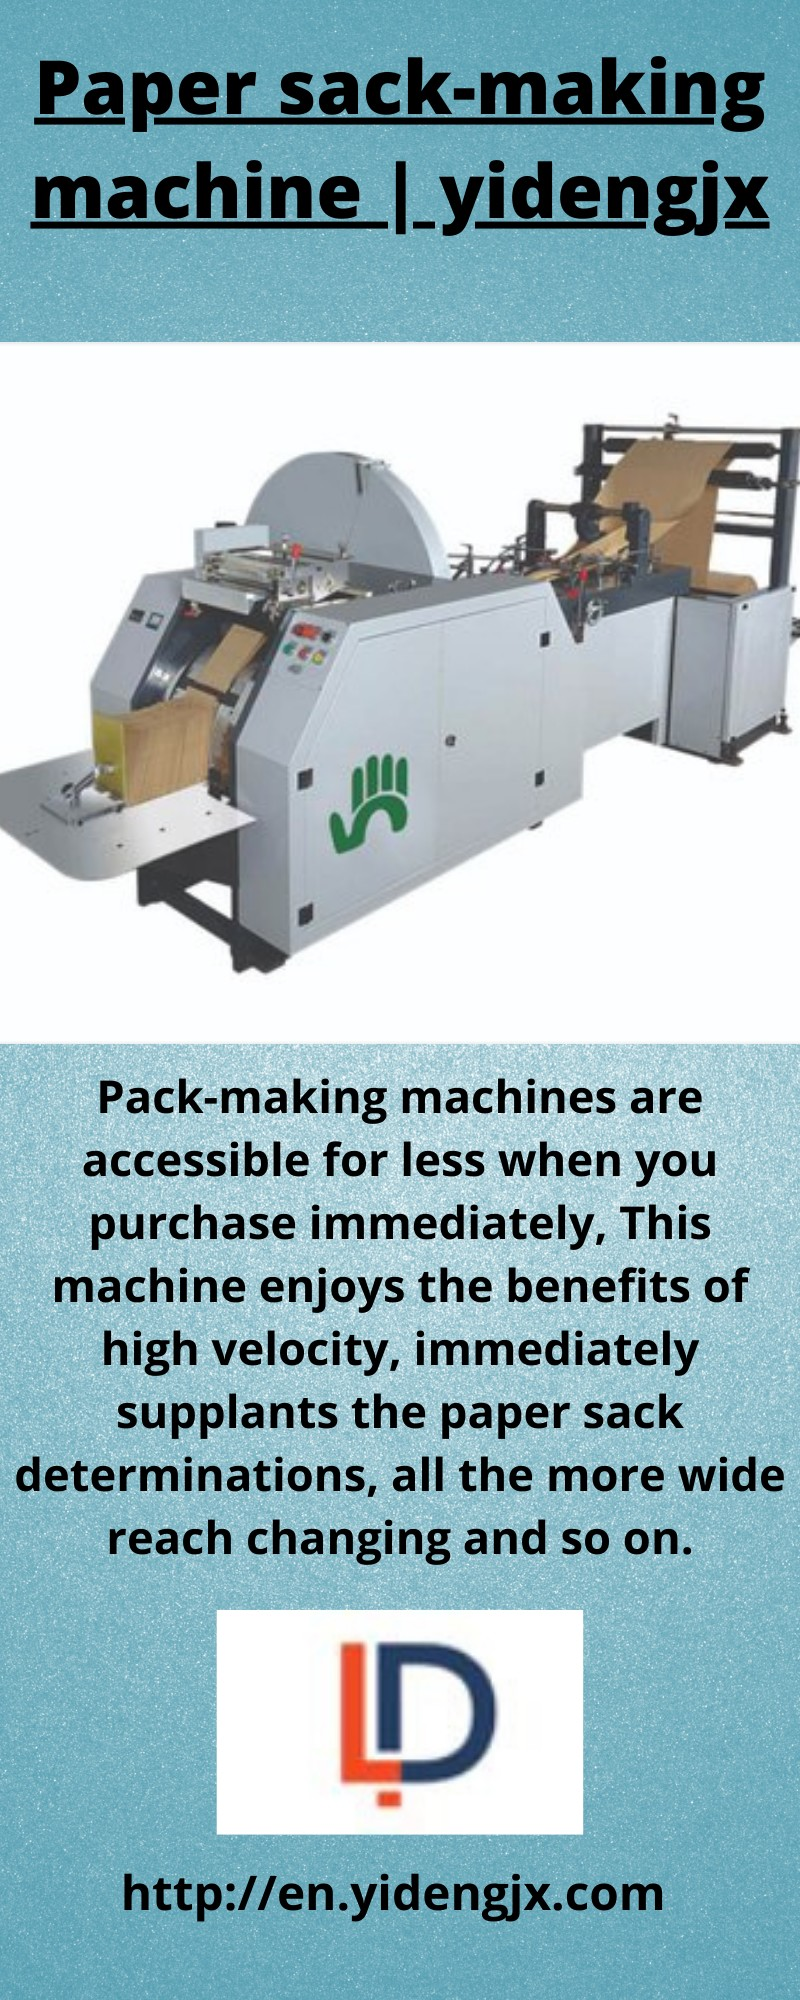 Paper sack making machine | yidengjx